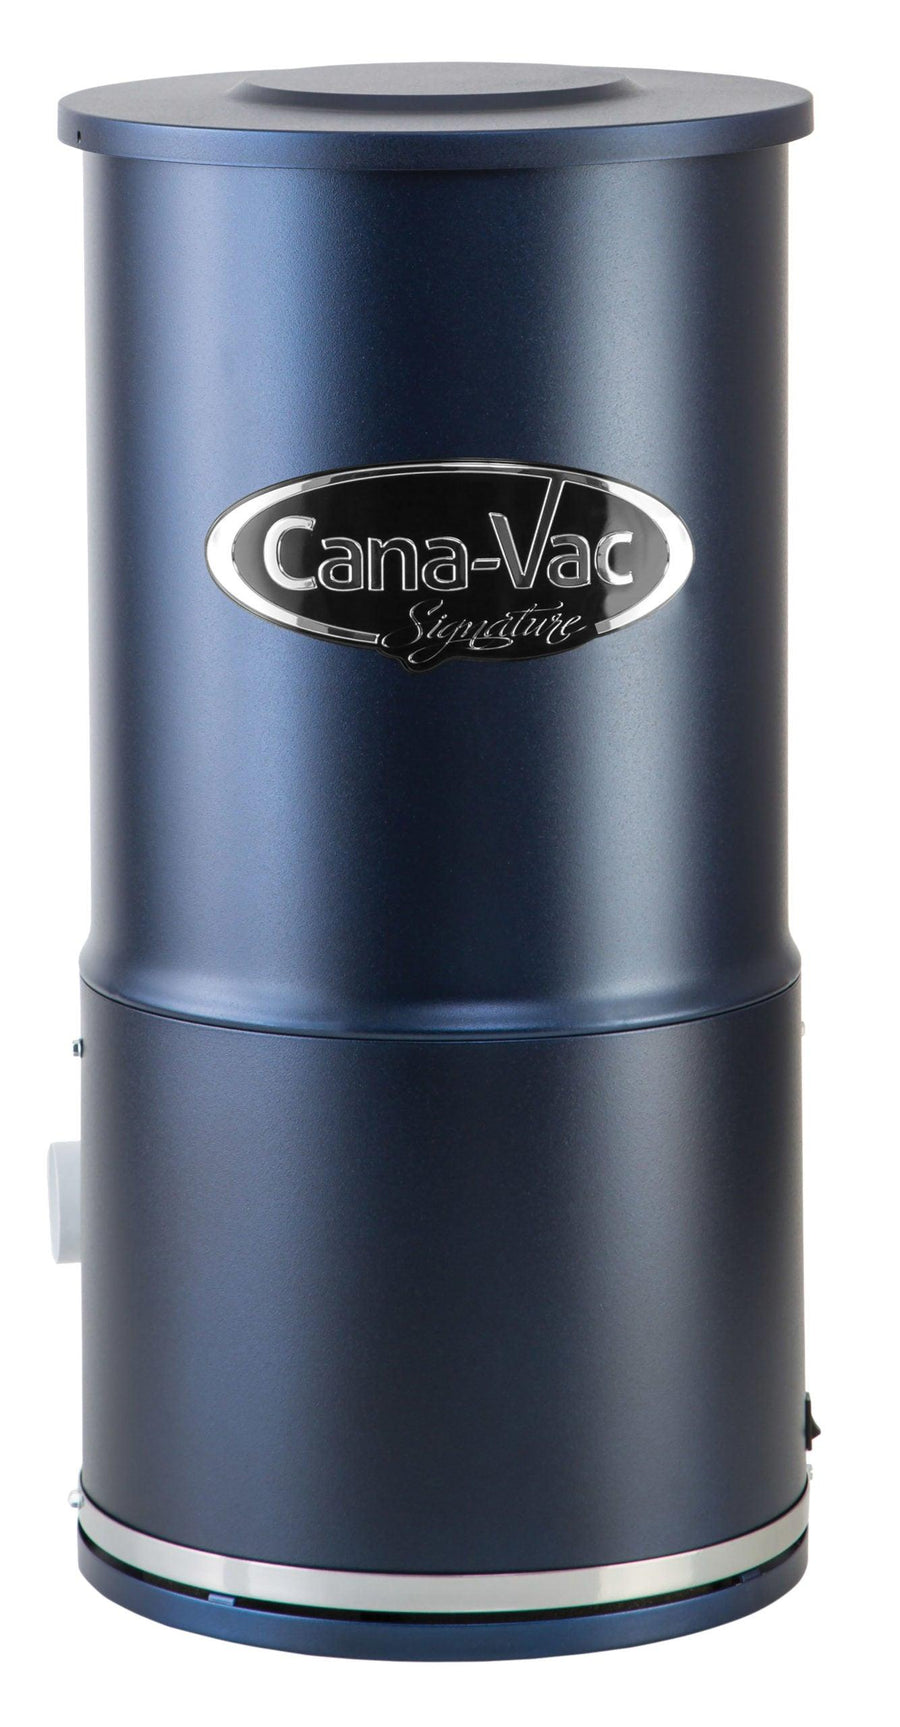 Cana-Vac LS490 Central Vacuum Unit - Geek Vacuums